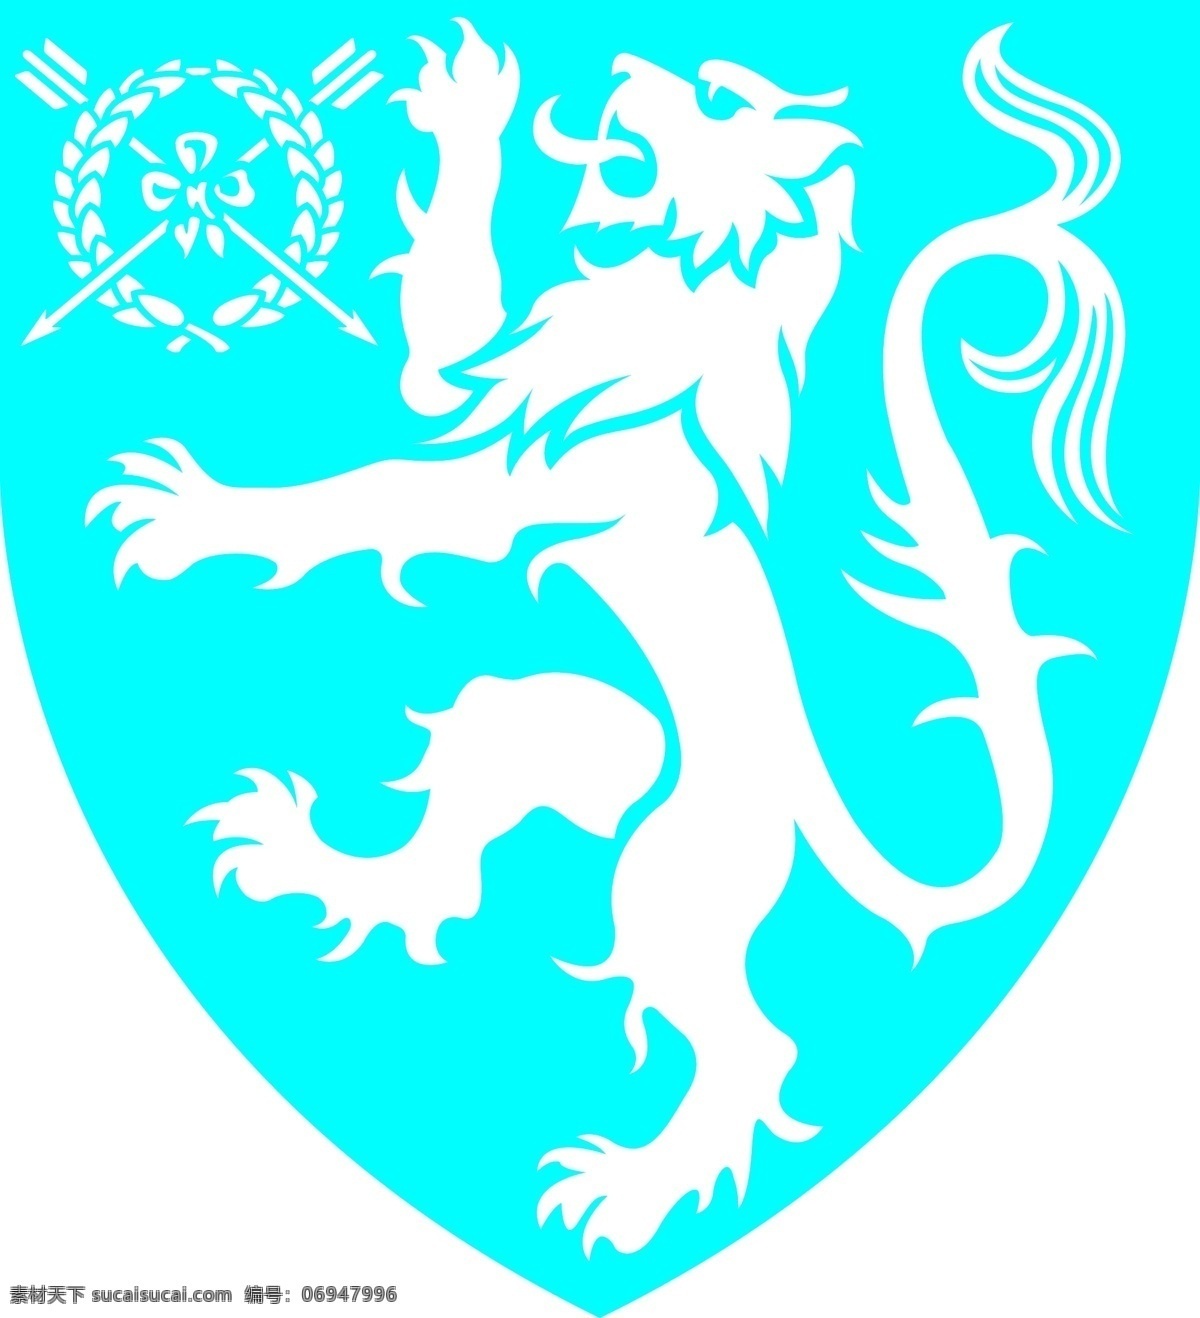 狮子 logo 标识标志图标 狮子logo 徽章 矢量 psd源文件 logo设计